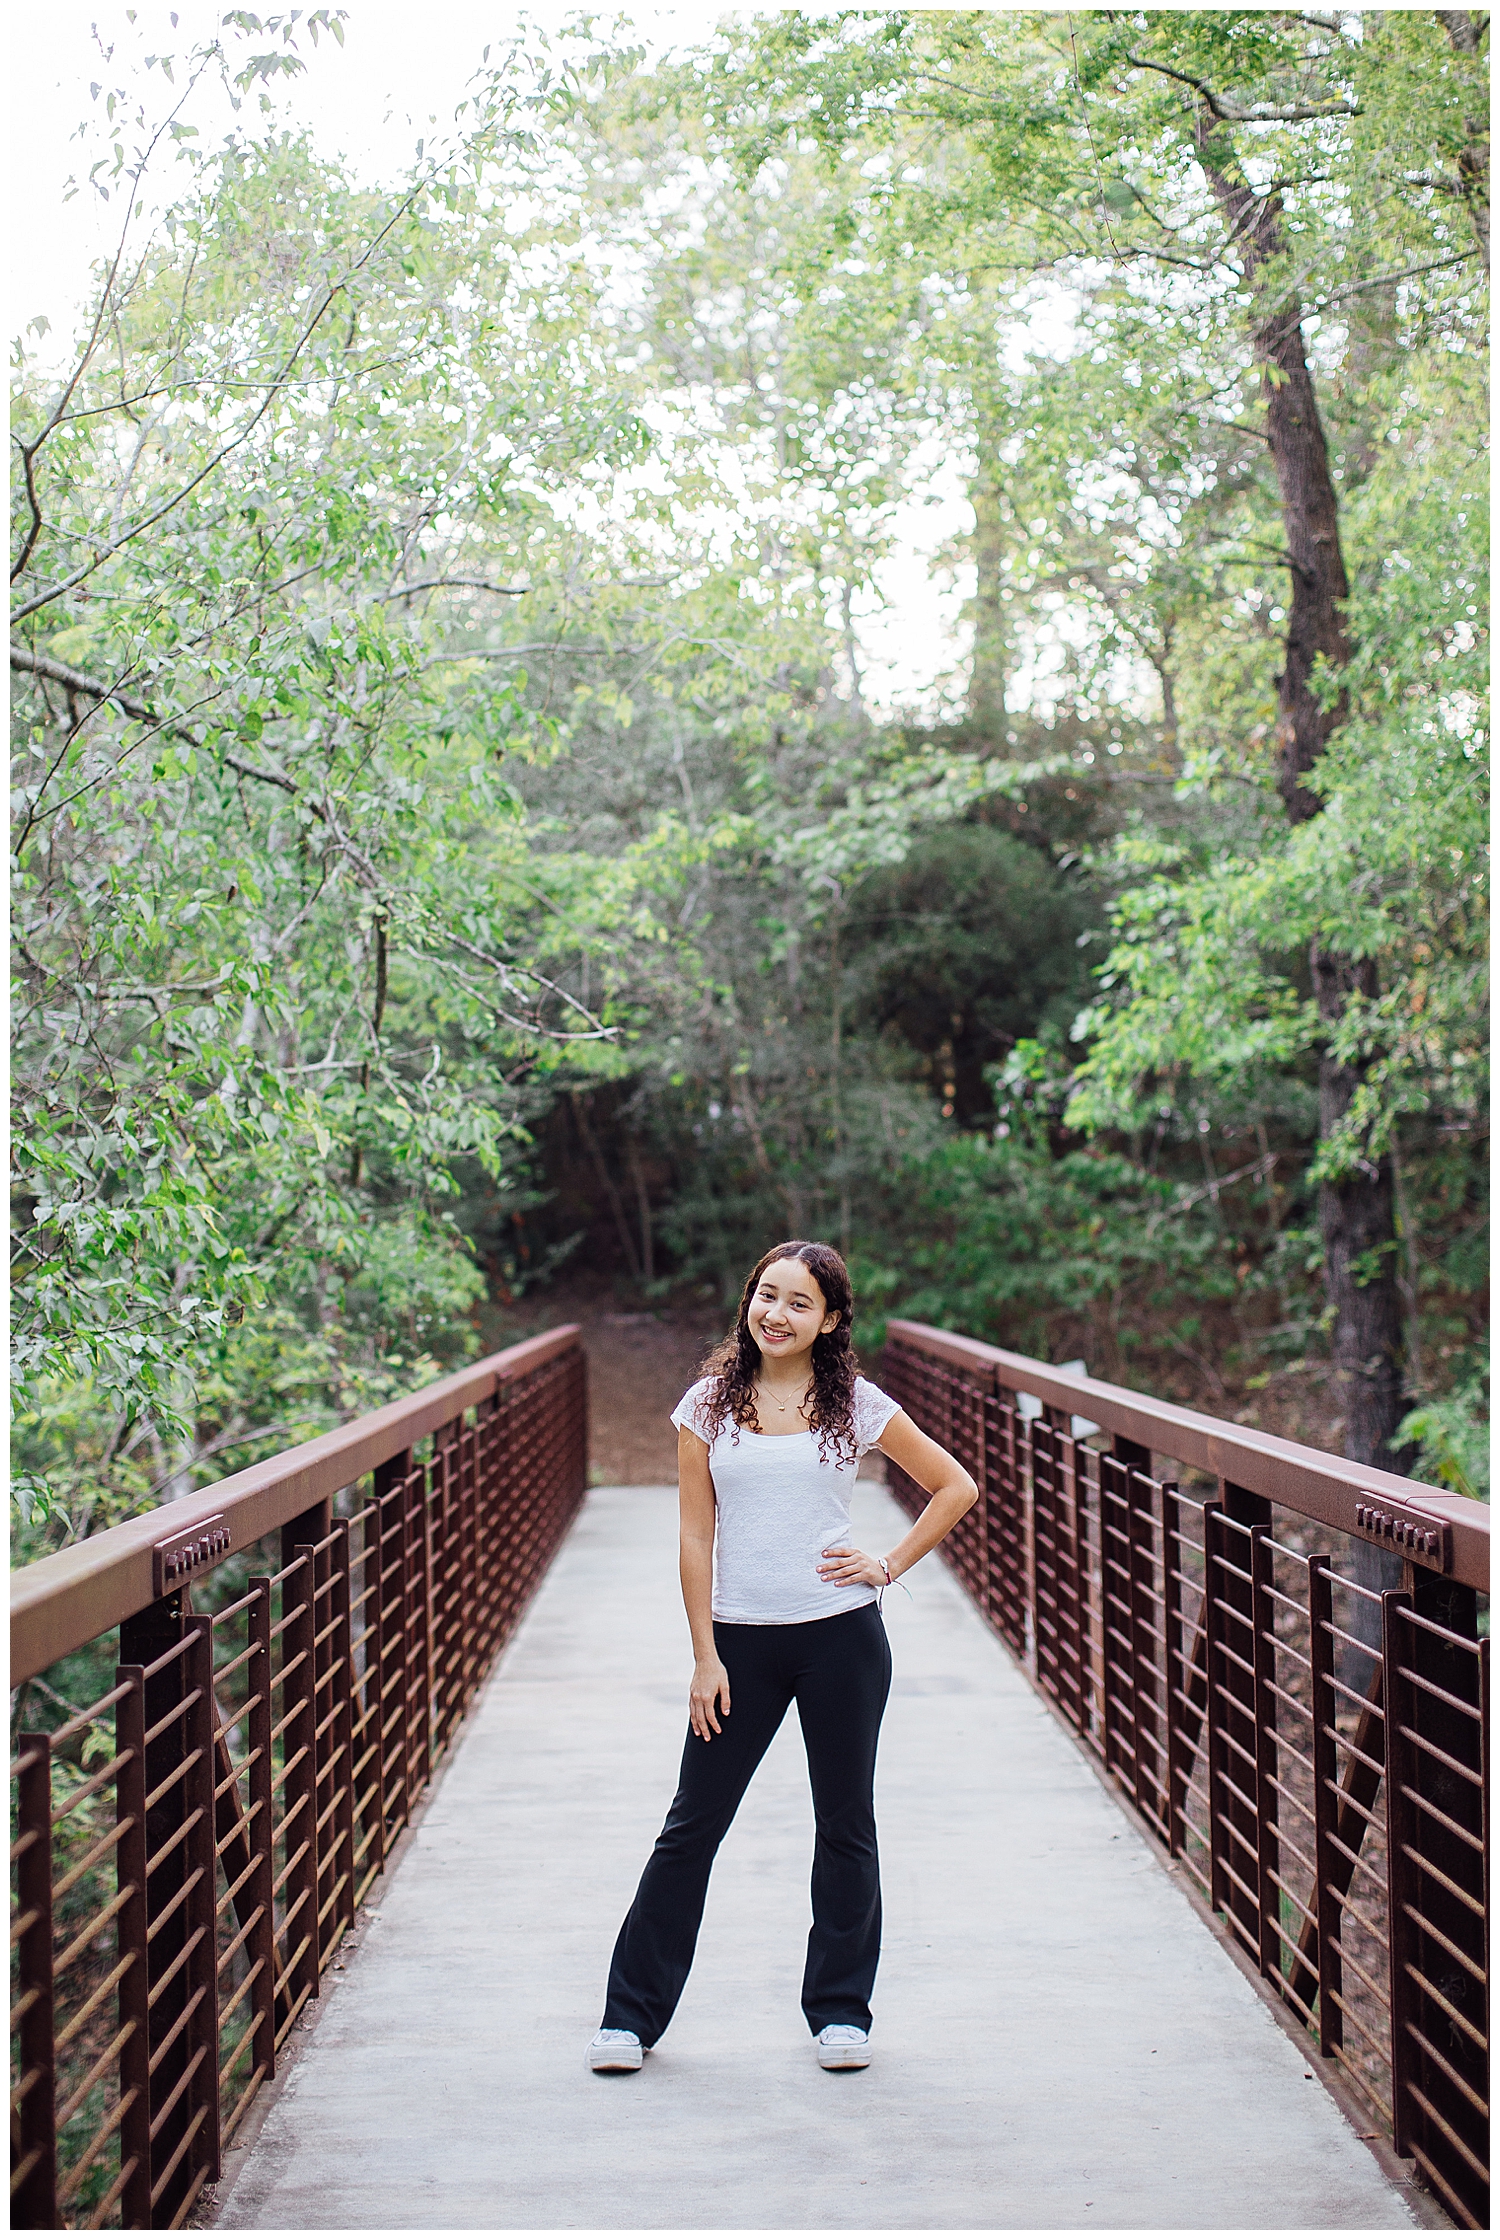 Houston senior girl in jeans and white shirt with hands in pocketsstanding on bridge at Houston Arboretum